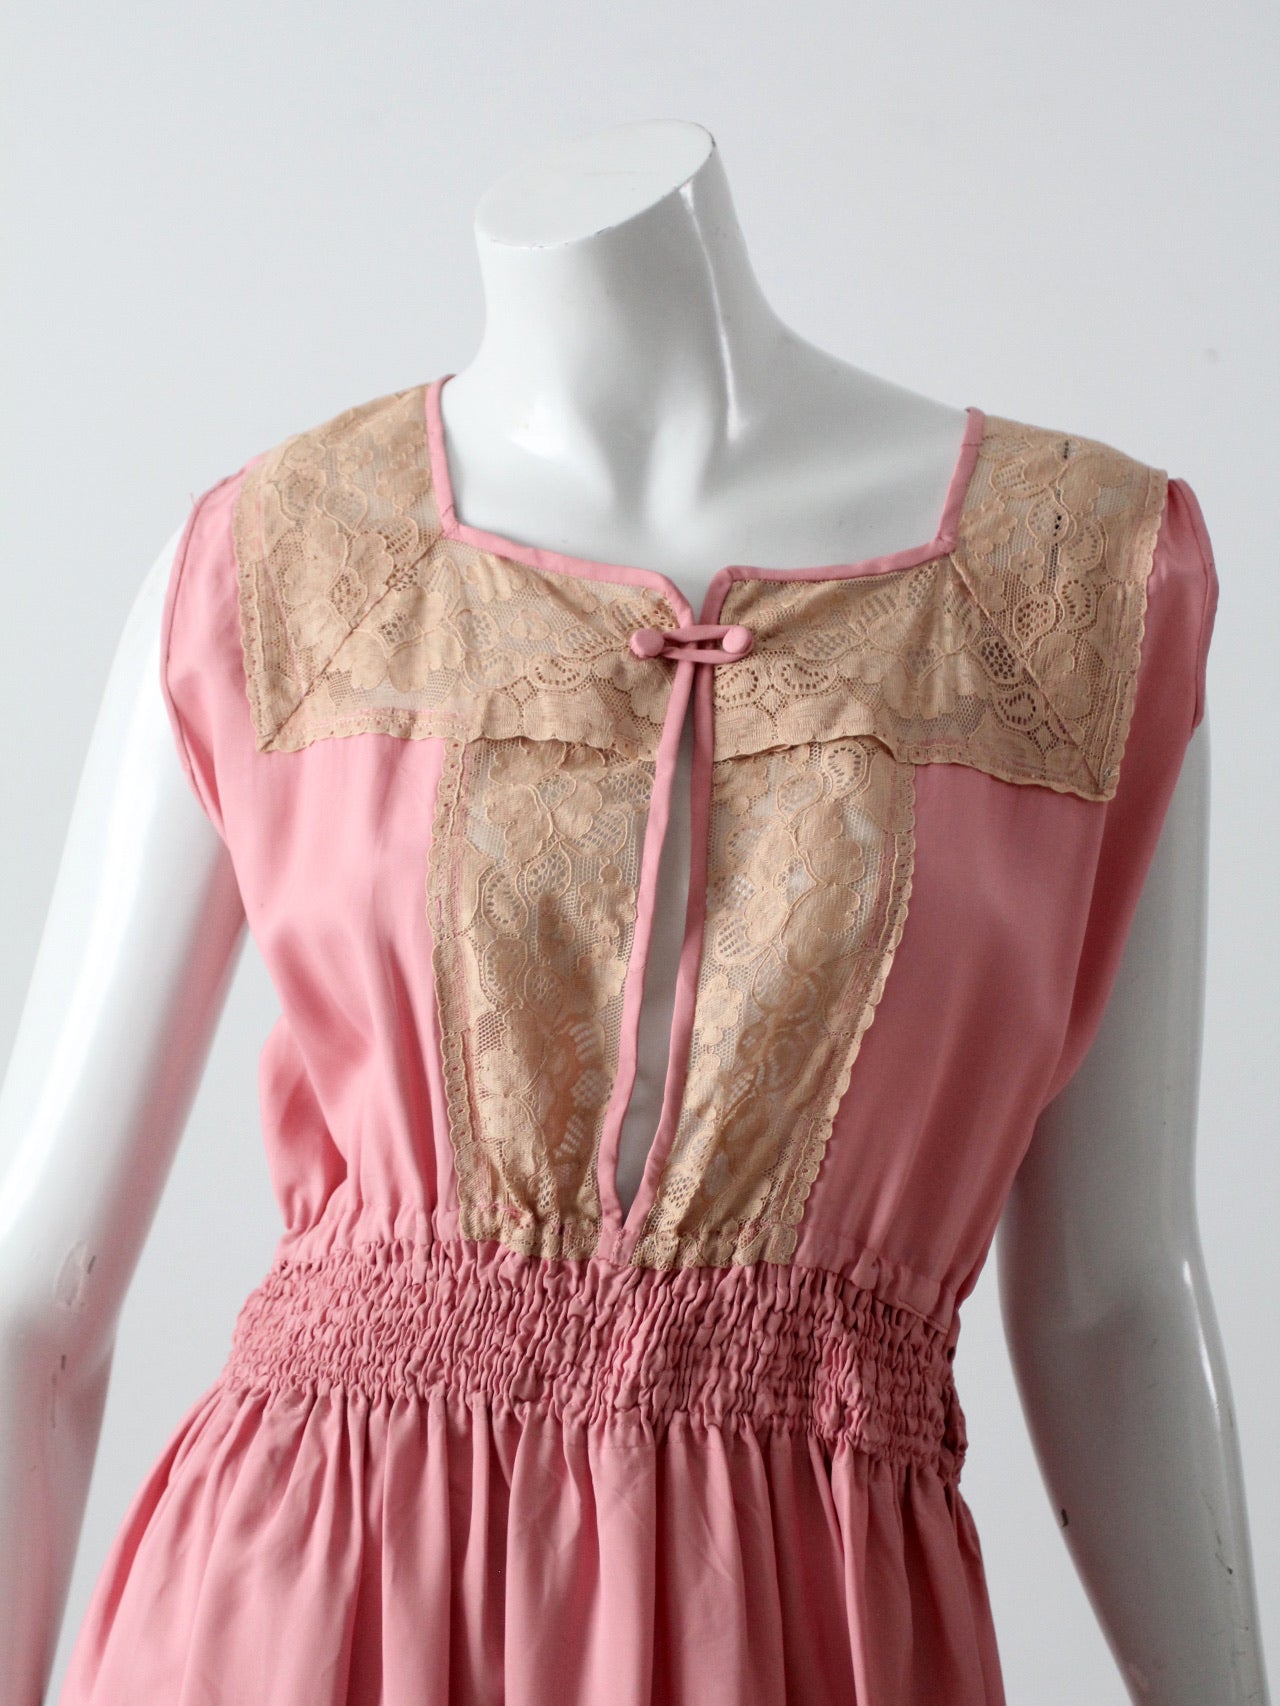 vintage 70s pink dress